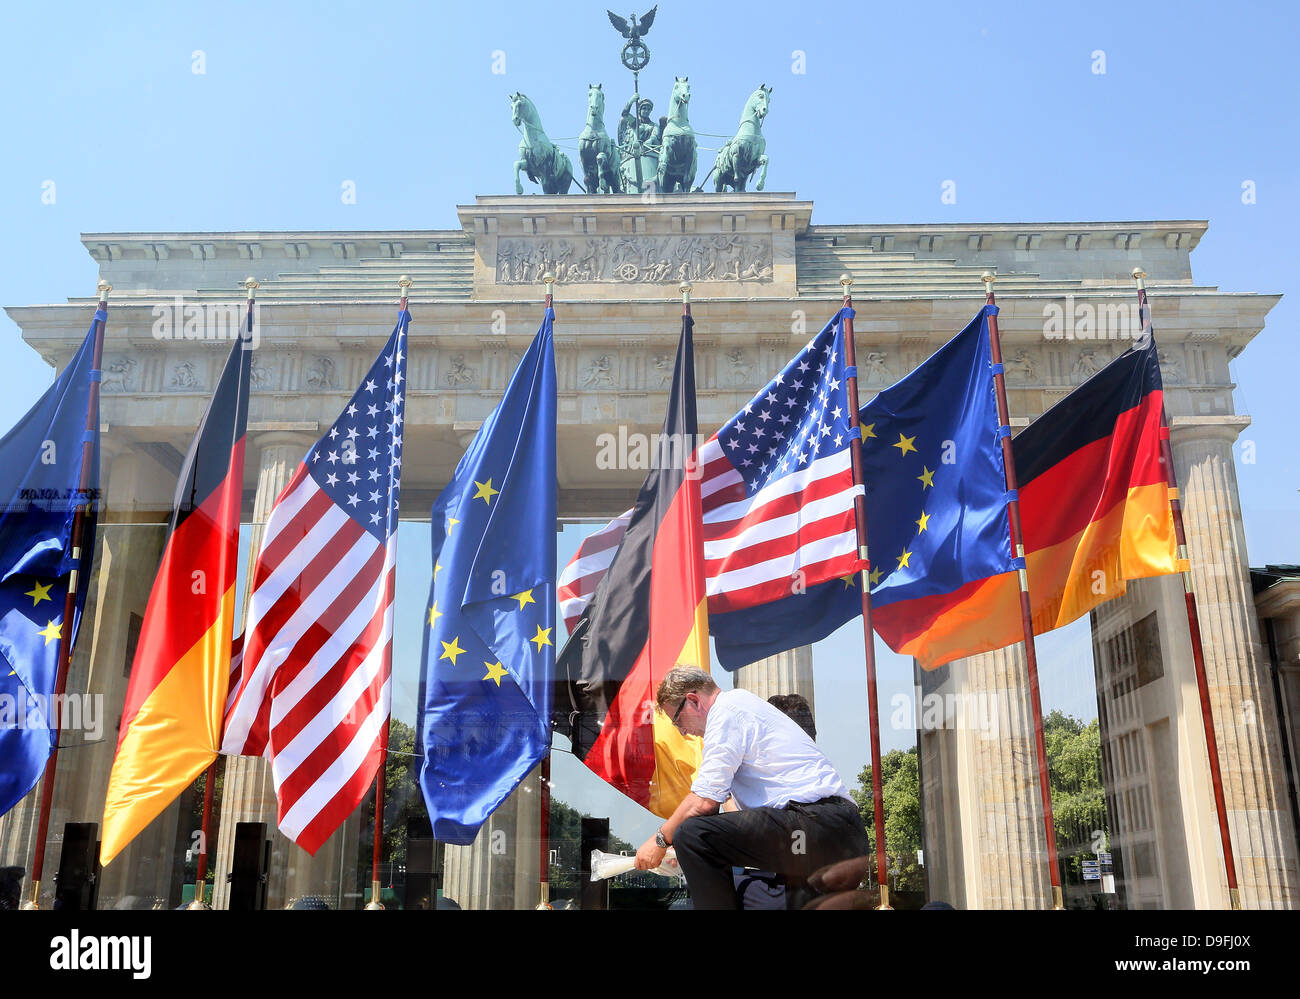 Drapeaux des USA, l'Allemagne et l'Europe (UE) sont construits en face de la porte de Brandebourg avant le discours du président américain Barak Obama à Berlin, Allemagne 19. Juin 2013. Photo : Stephanie Pilick/dpa/Alamy Live News/dpa/Alamy Live News Banque D'Images